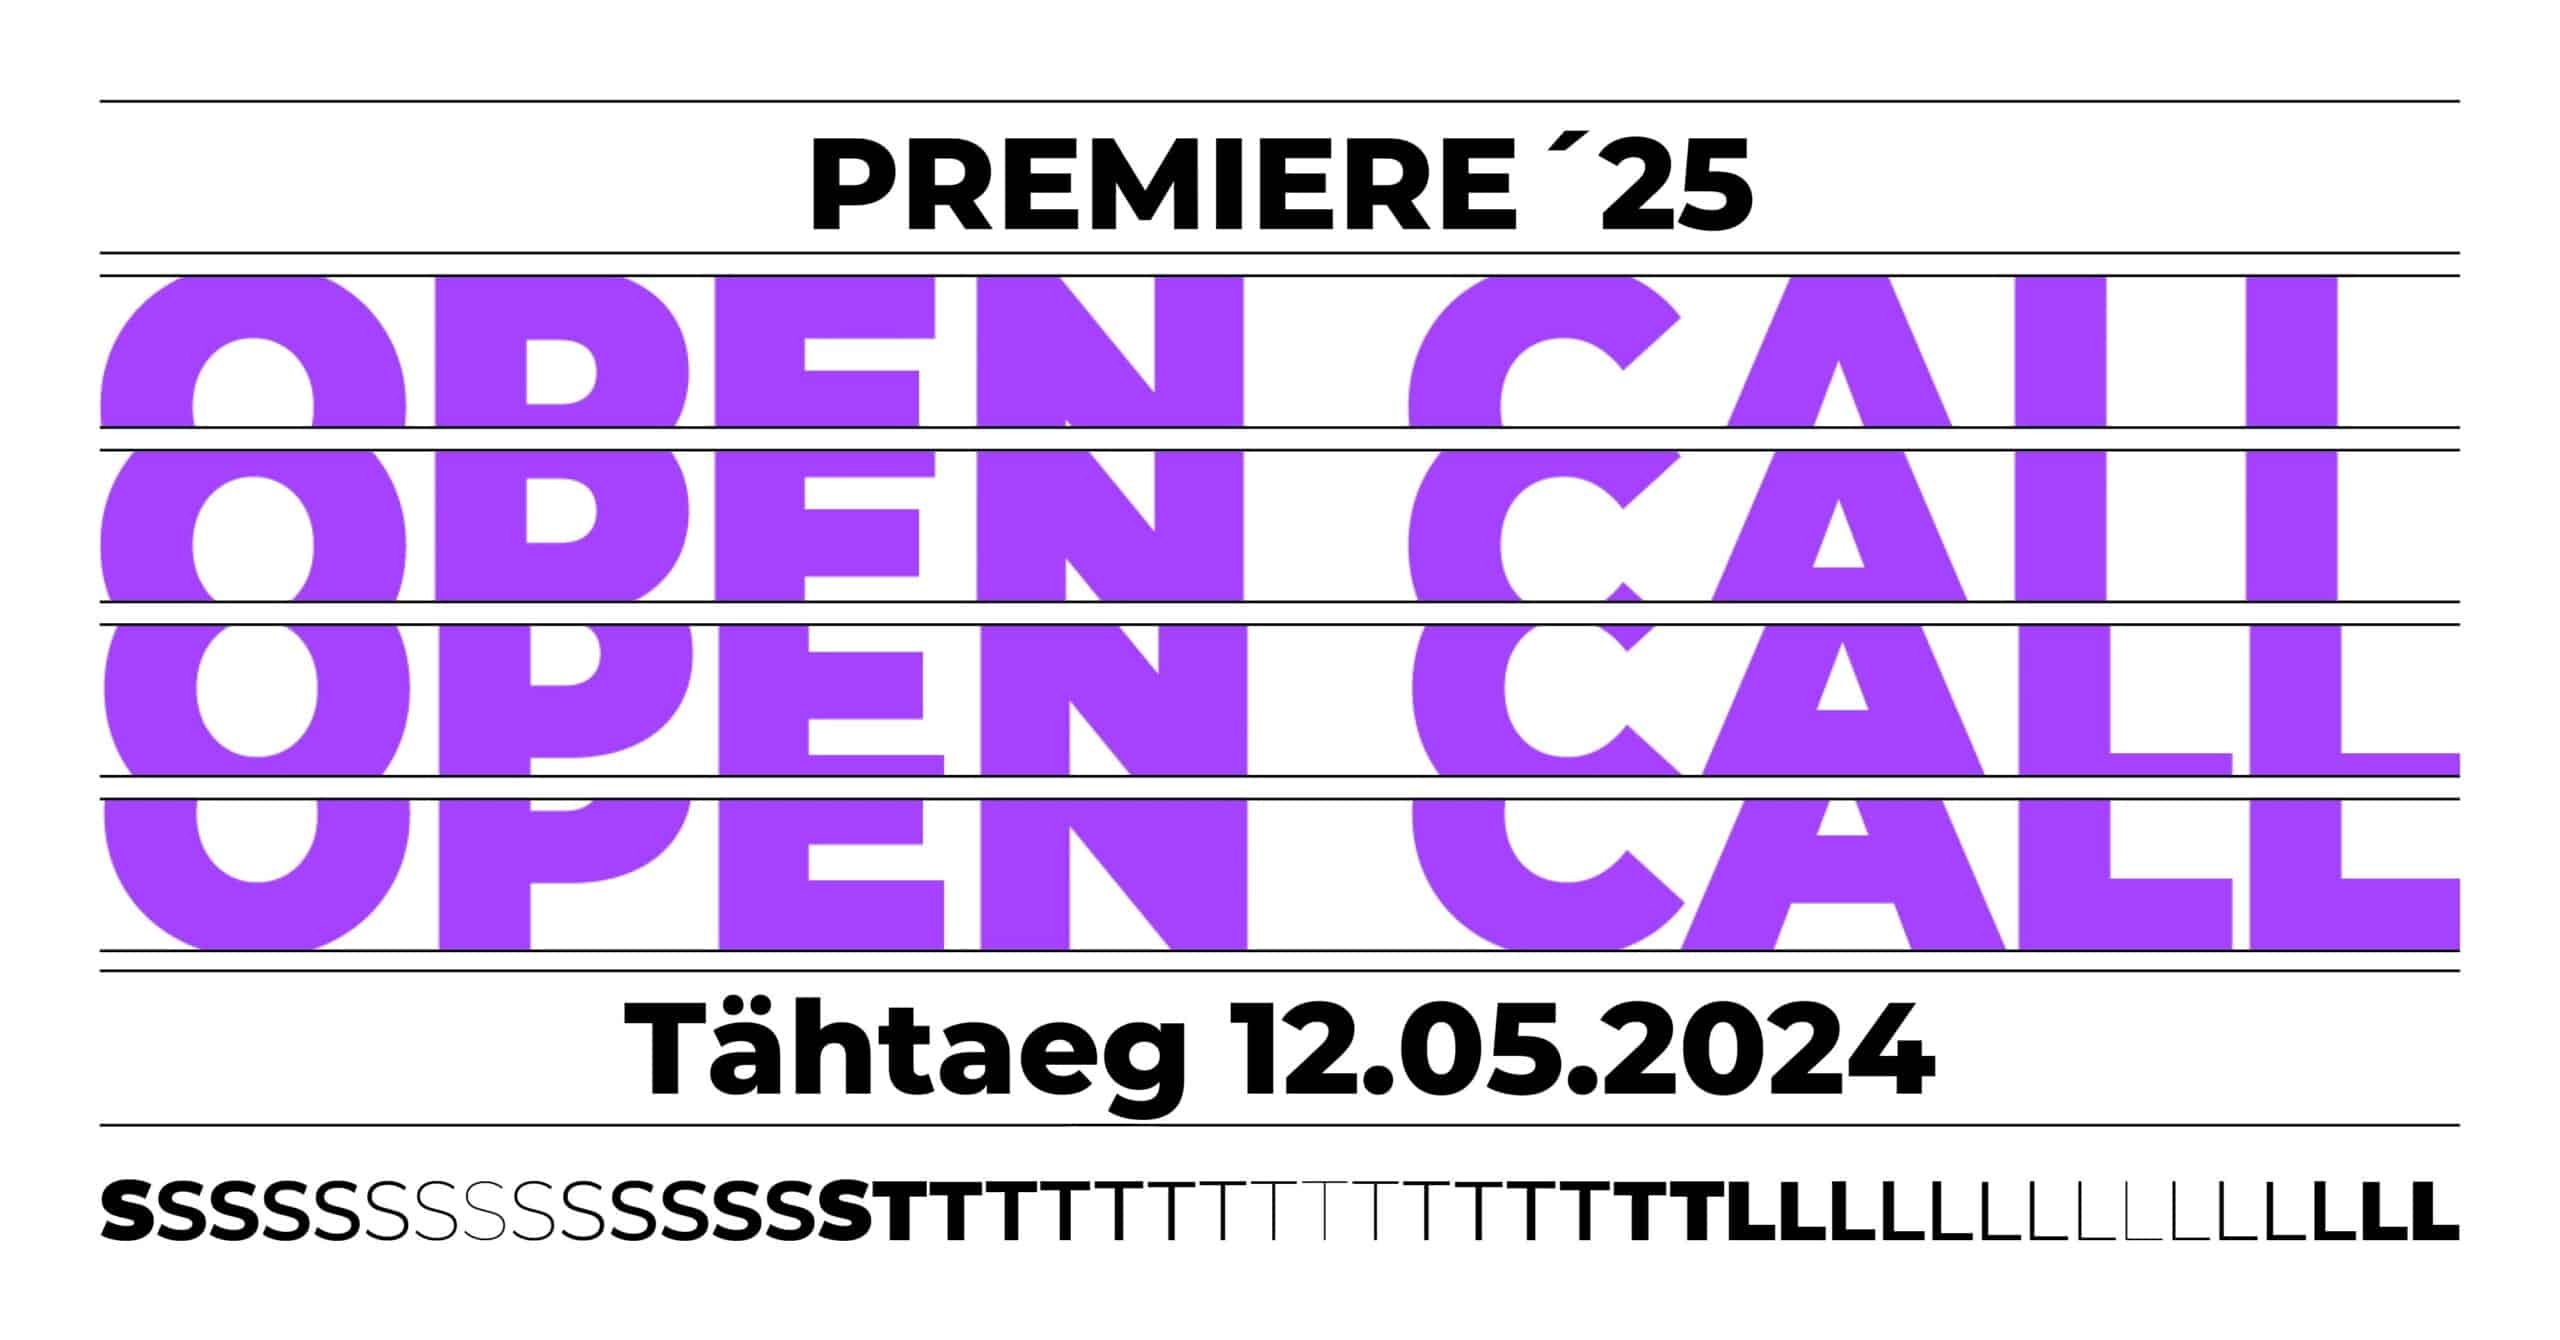 Pildi keskel on lillade suurte tähtedega kirjas "OPEN CALL", selle ülal "Premiere '25" ja all "Tähtaeg 12.05.2024".